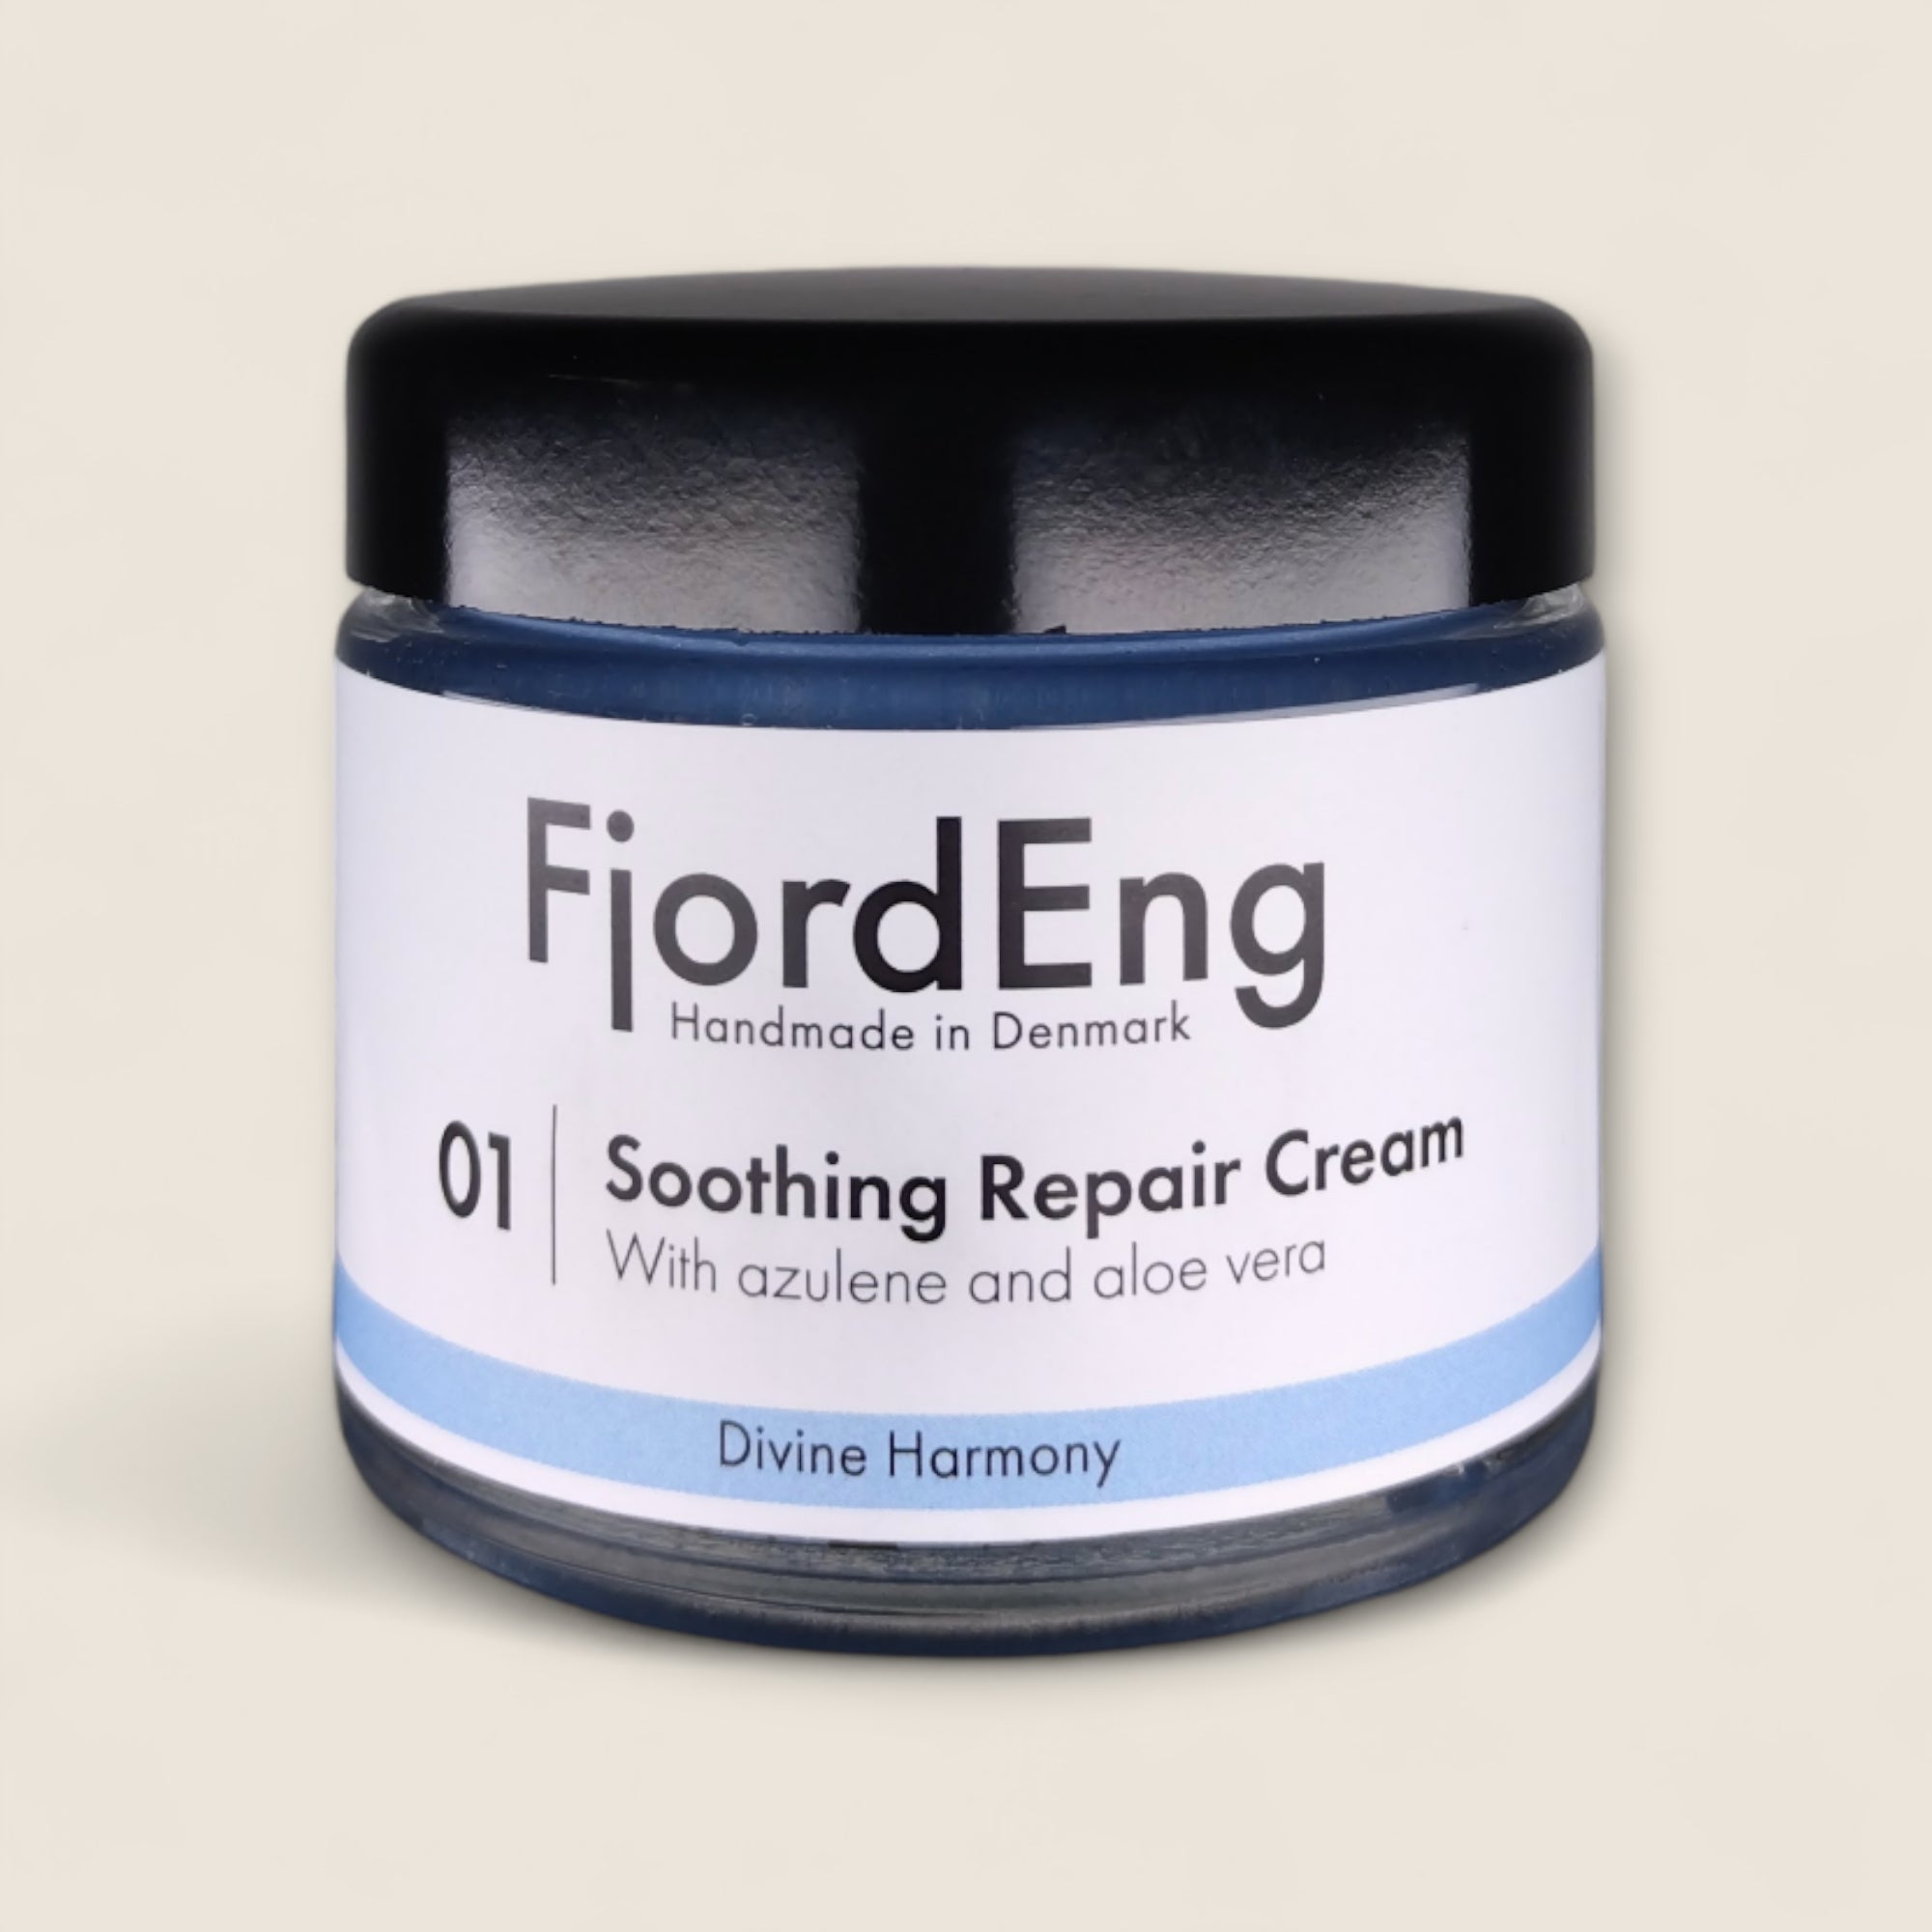 Billede af 01 / Soothing Repair Cream - 50ml